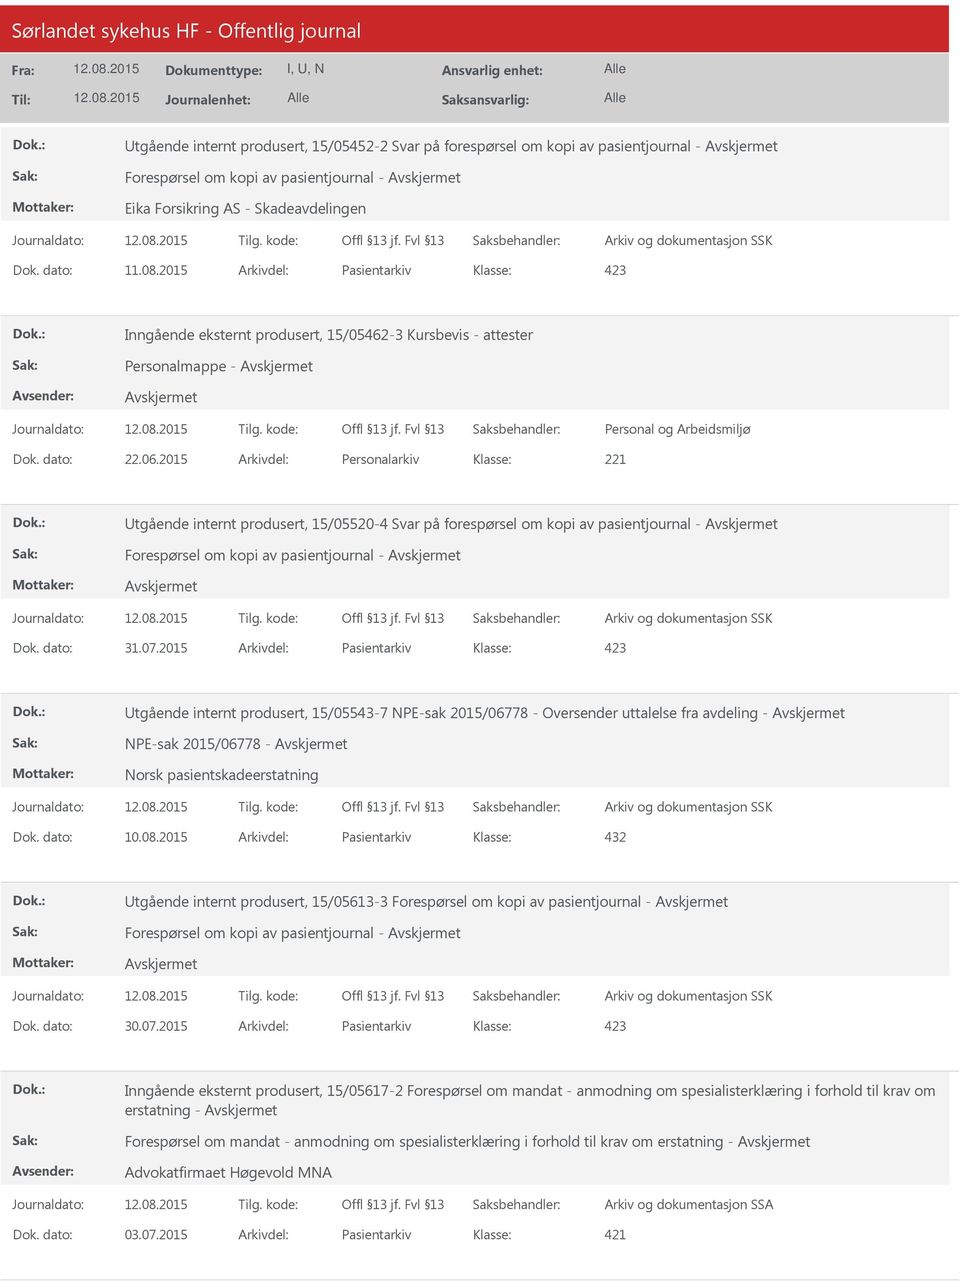 2015 Arkivdel: Personalarkiv Utgående internt produsert, 15/05520-4 Svar på forespørsel om kopi av pasientjournal - Forespørsel om kopi av pasientjournal - Dok. dato: 31.07.